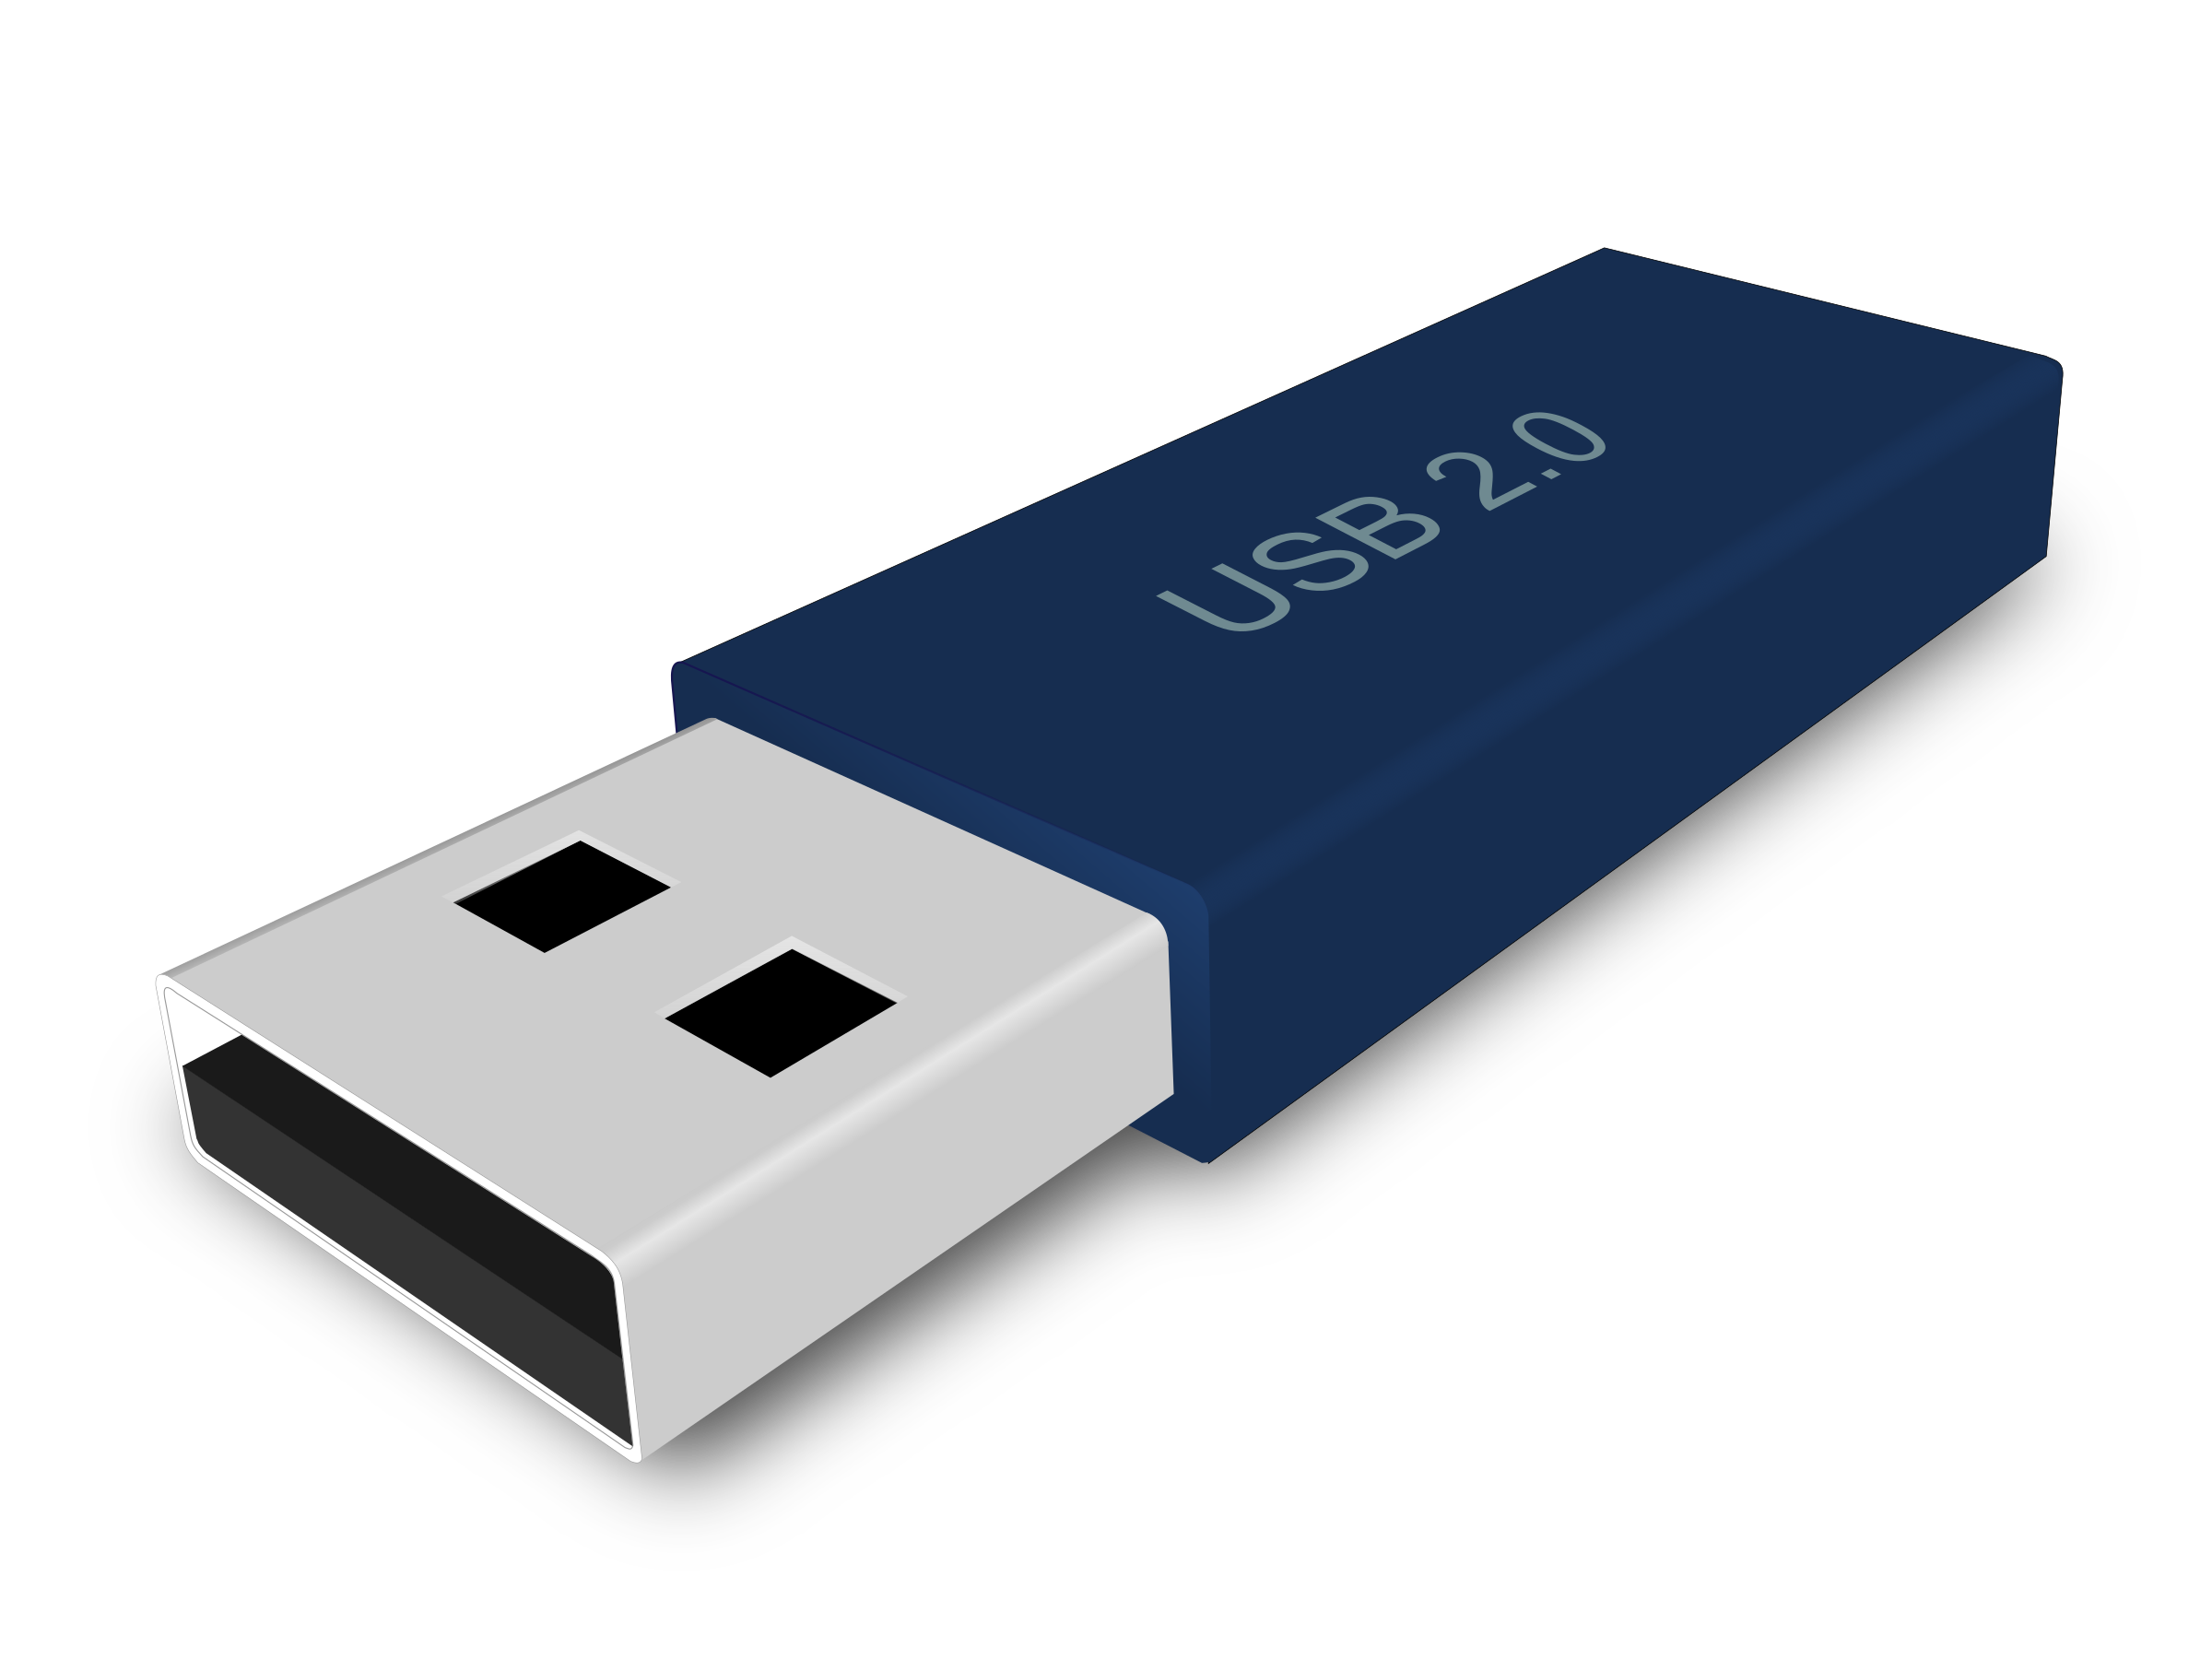 128x128 px, USB Icon 256x256 